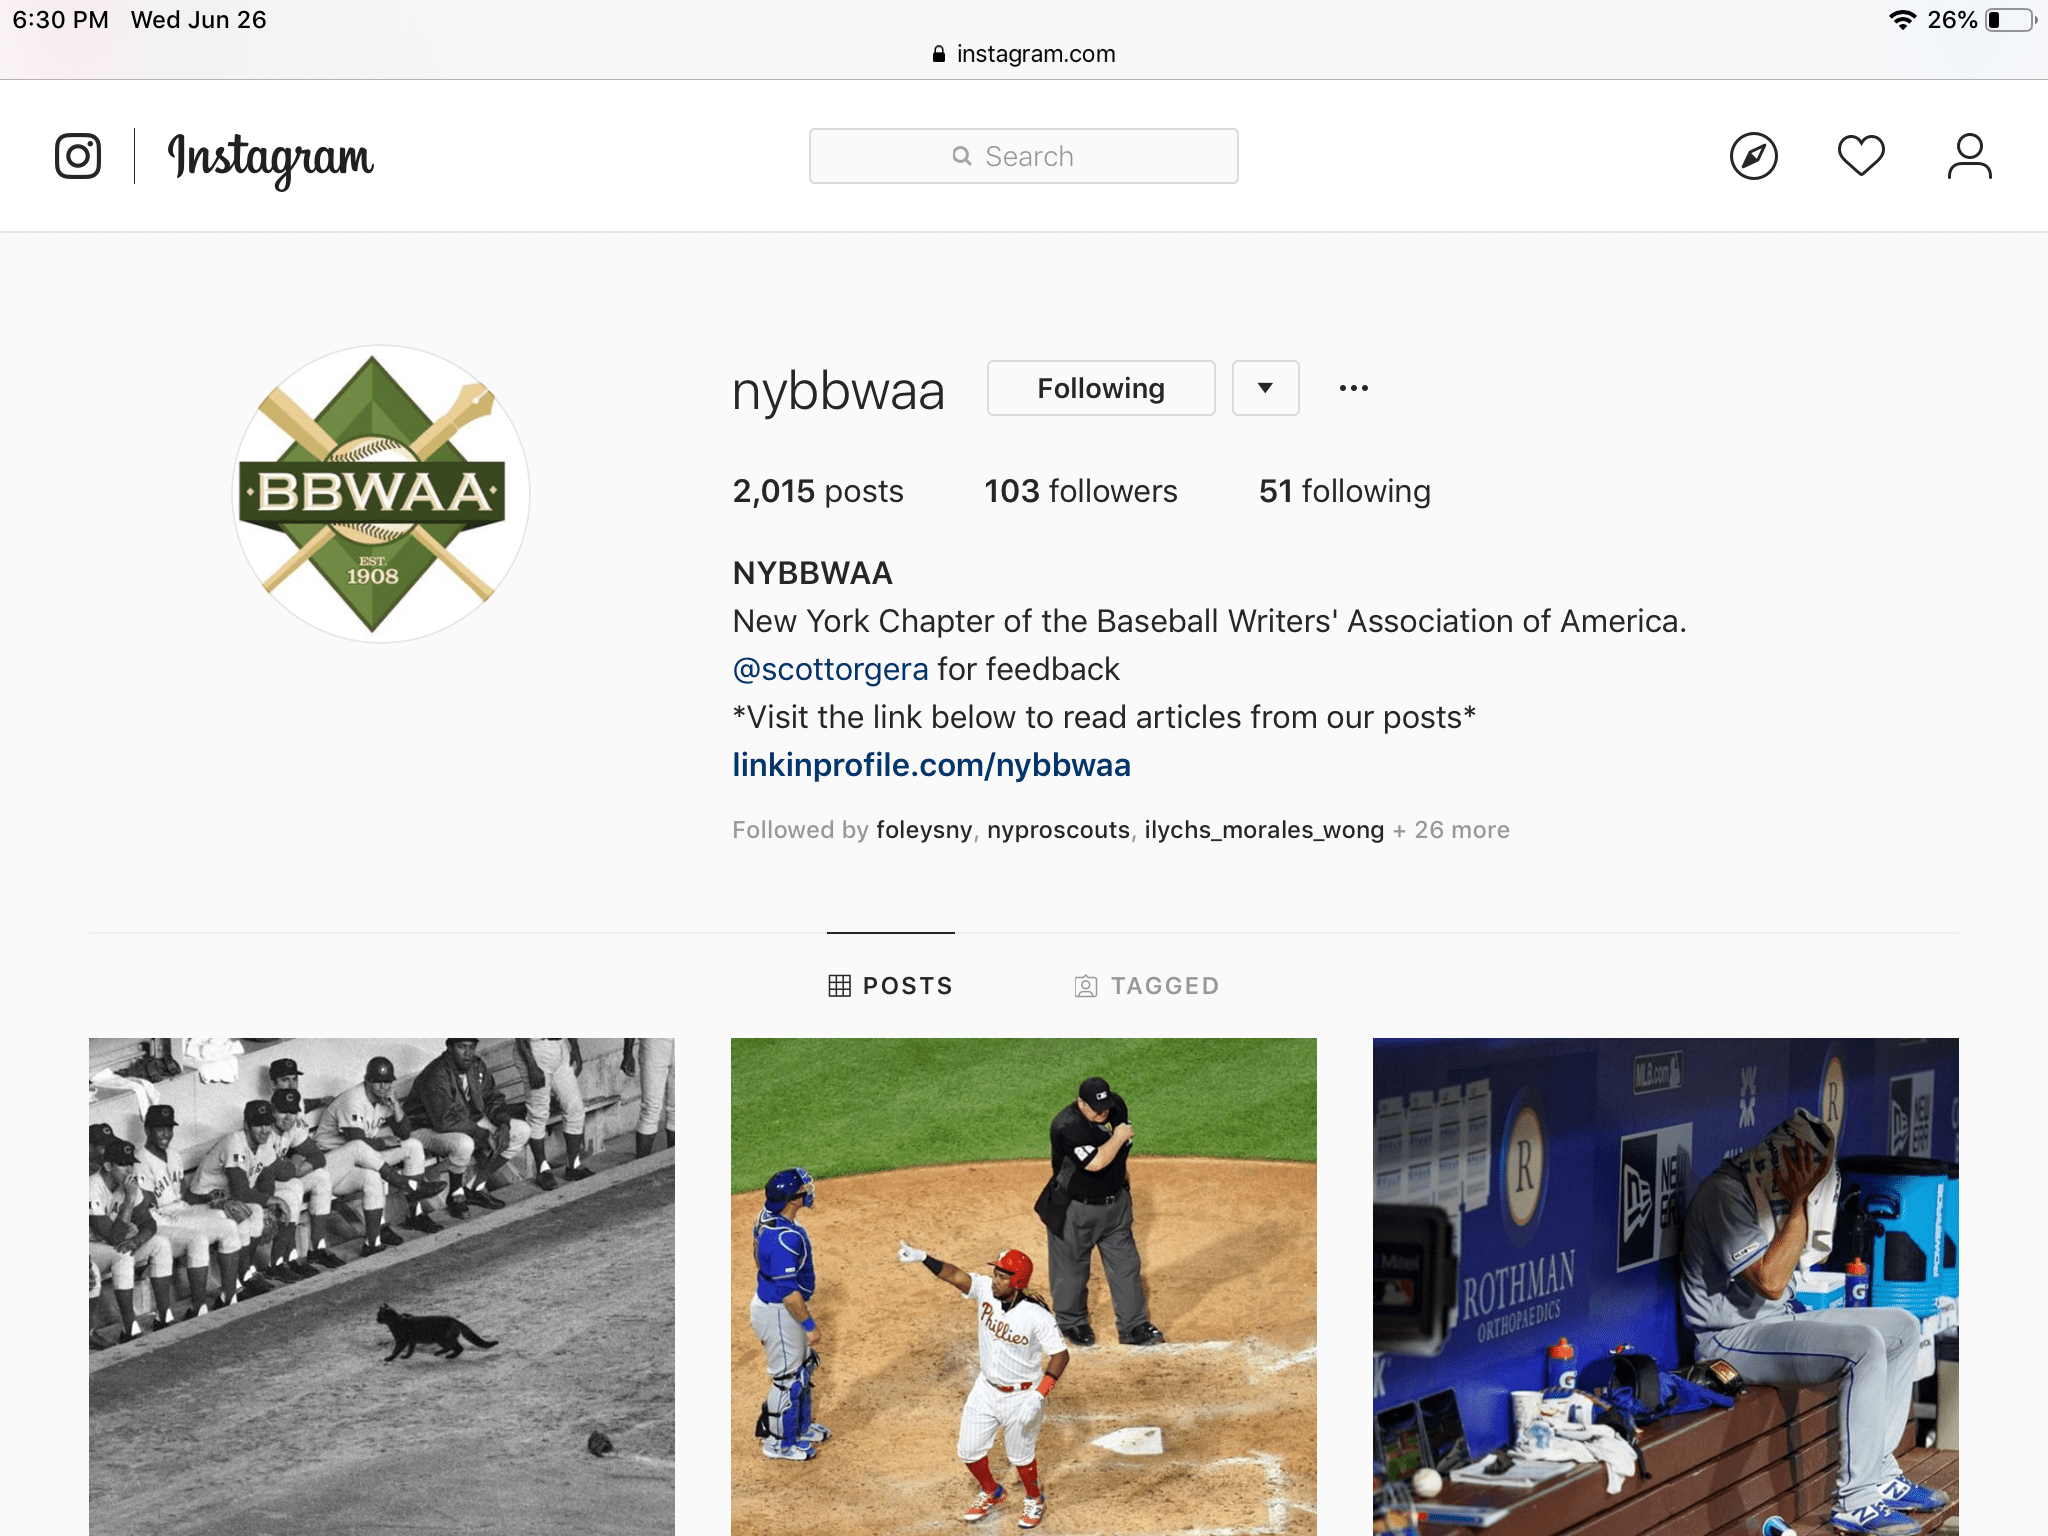 снимок экрана профиля Instagram в Safari для iPad